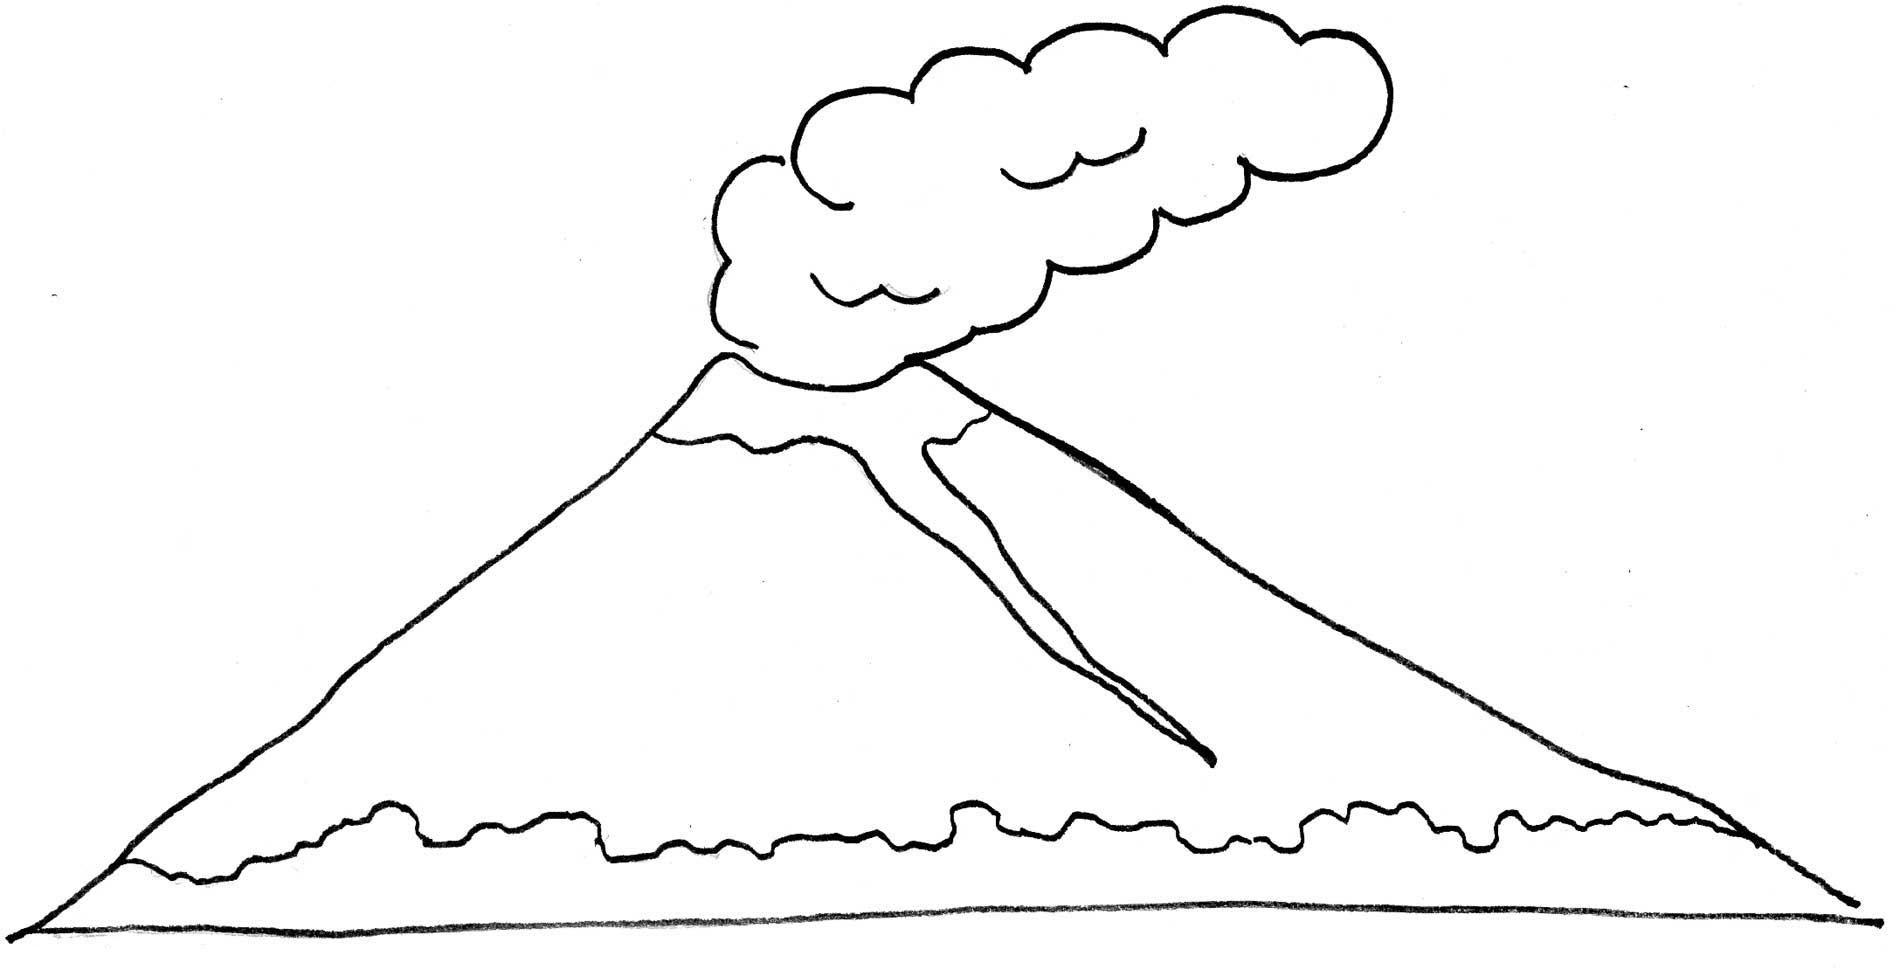 Gambar gunung berapi kartun